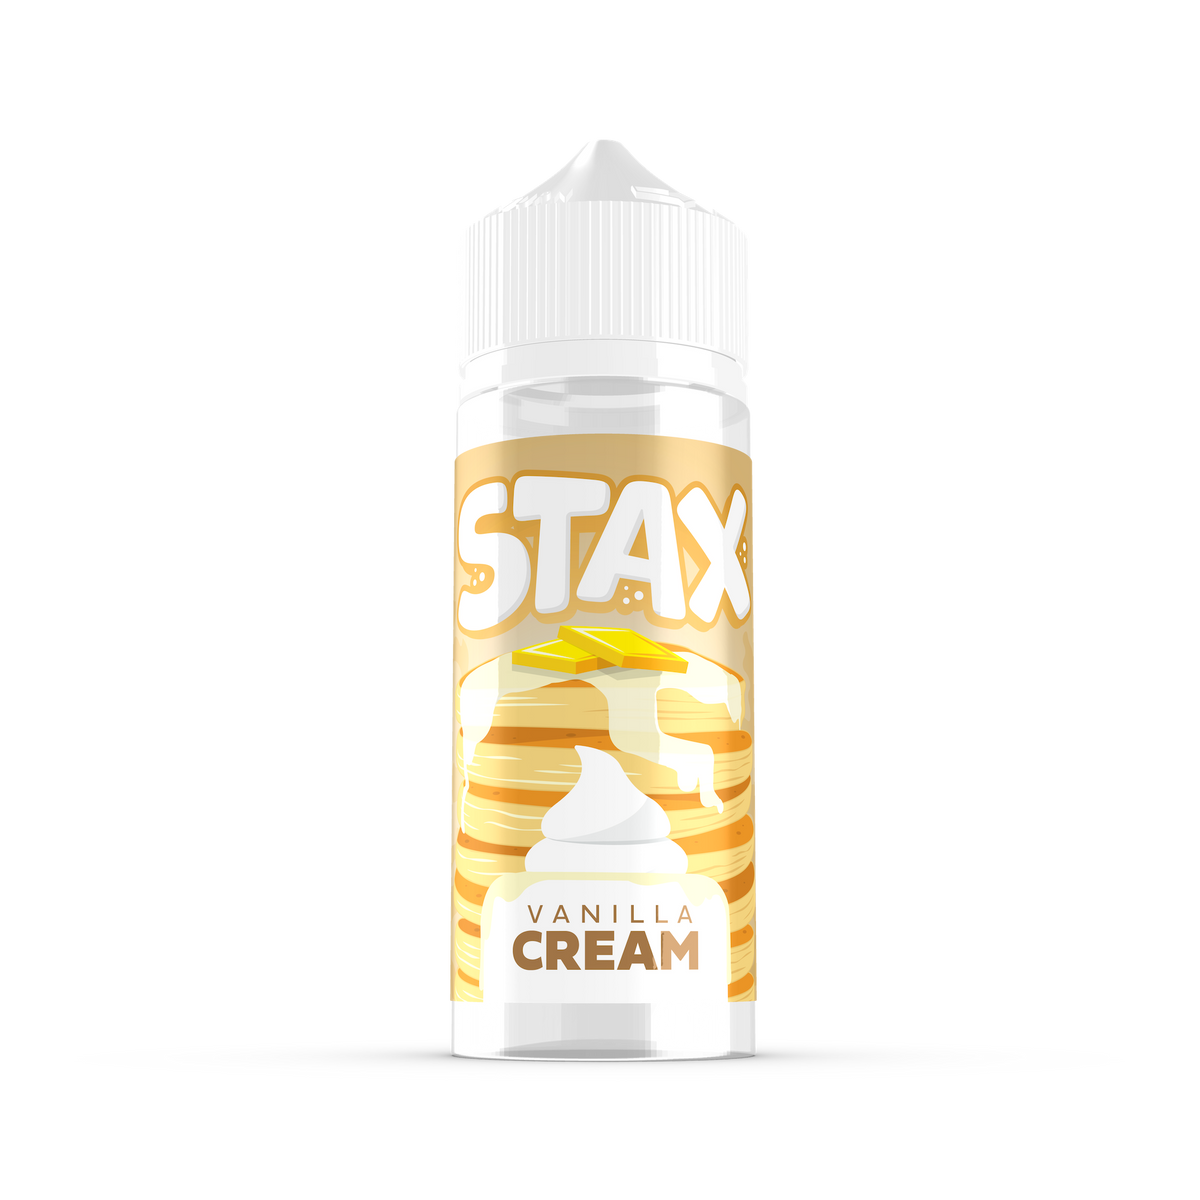 Stax - Vanilla Cream 100ml